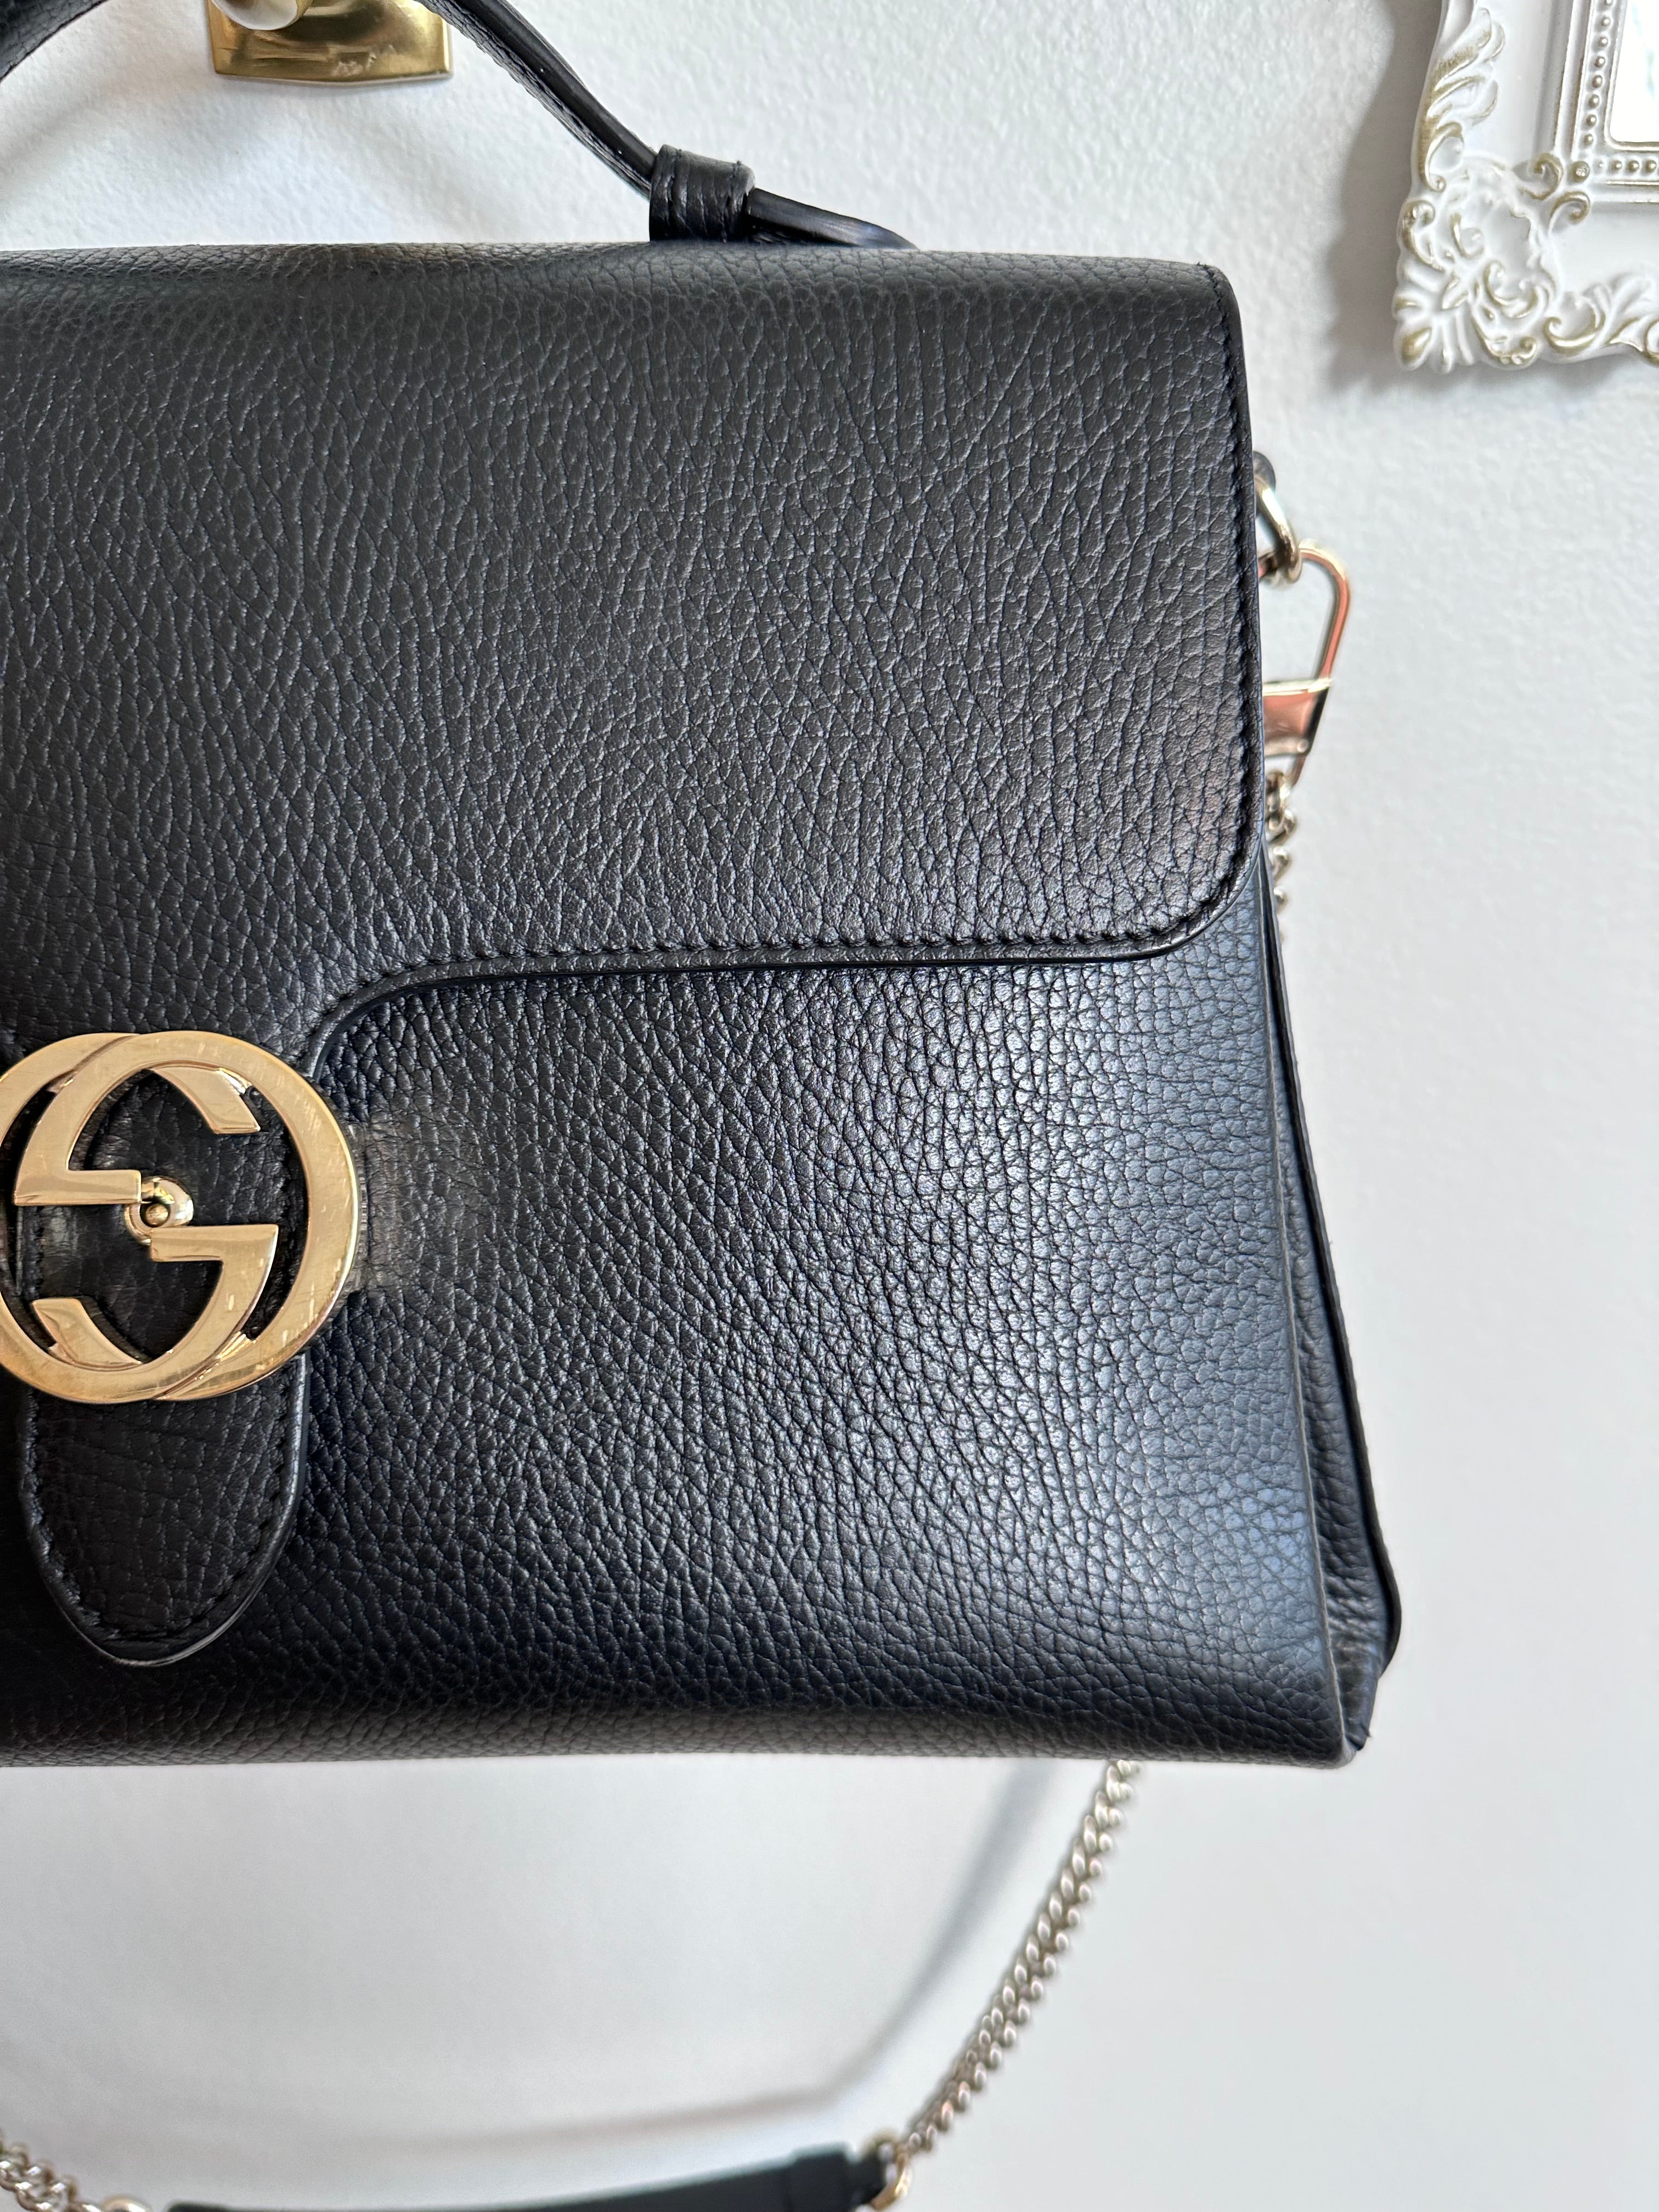 Pre-Owned GUCCI Black Leather Dollar Interlocking GG Satchel/Shoulder Bag